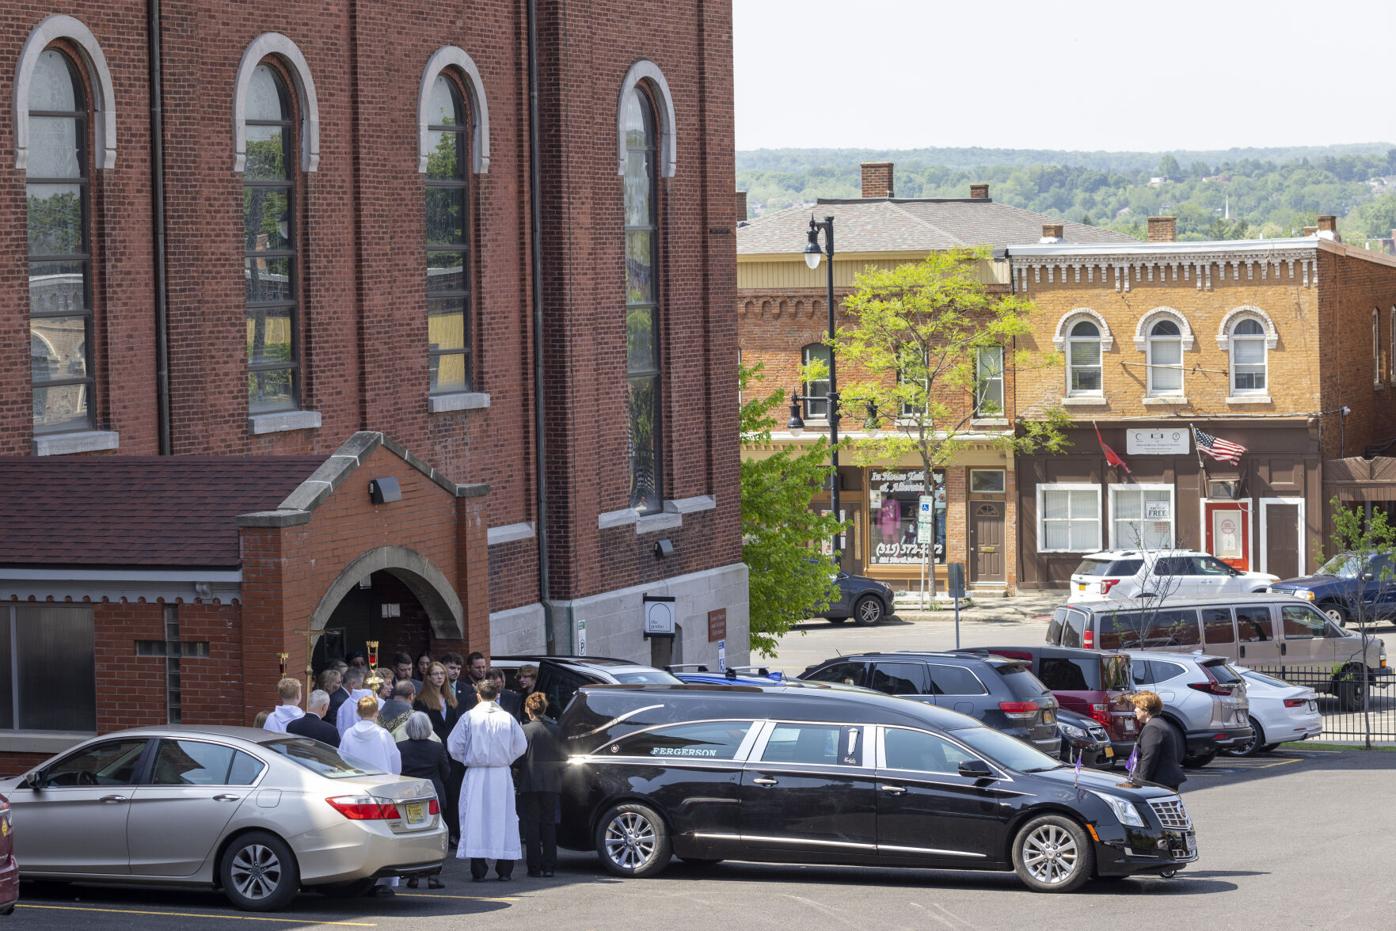 Black Catholic victim of the Buffalo massacre laid to rest